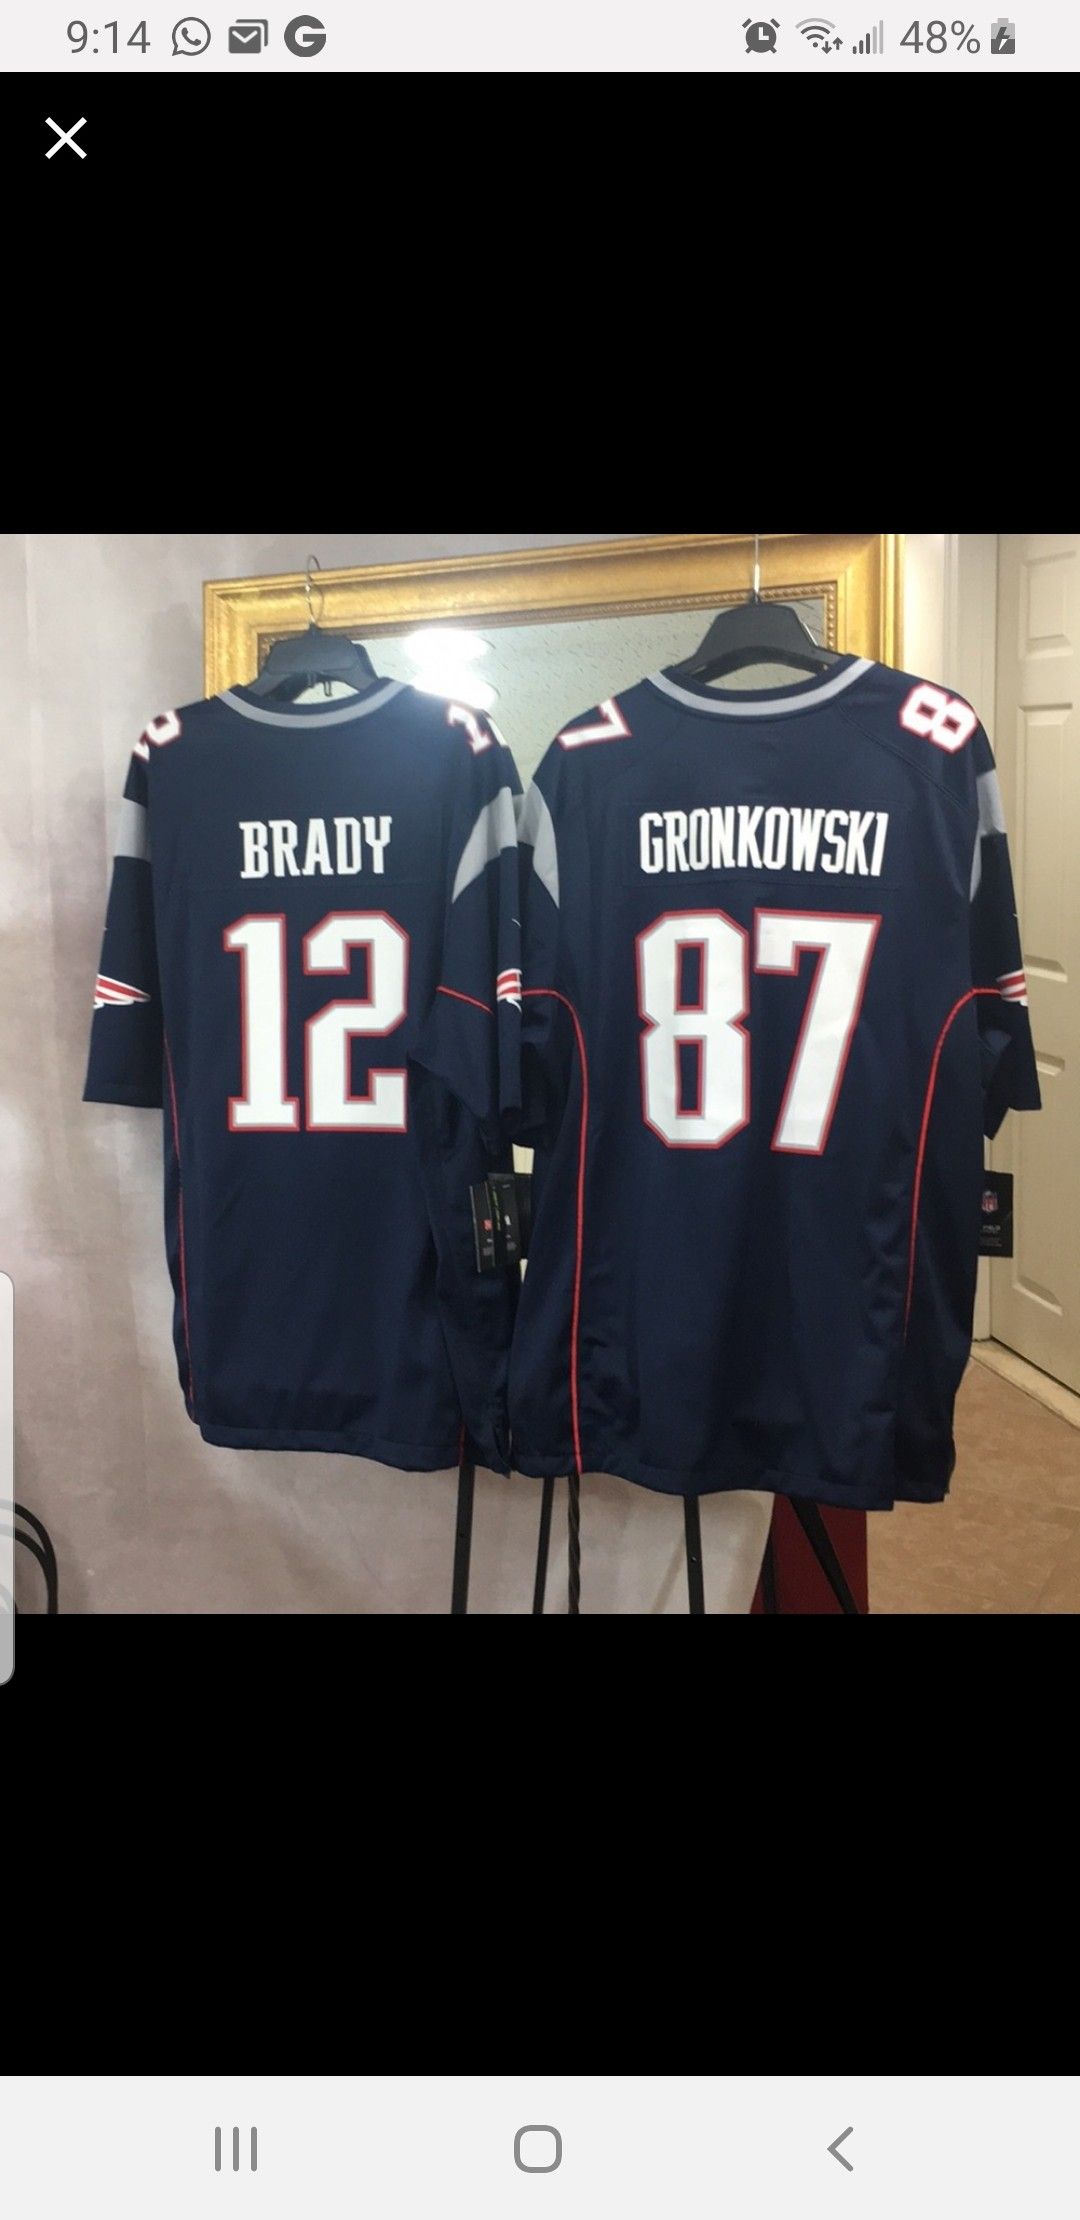 Brady (XXL) and Gronkowski (XL) NFL jerseys